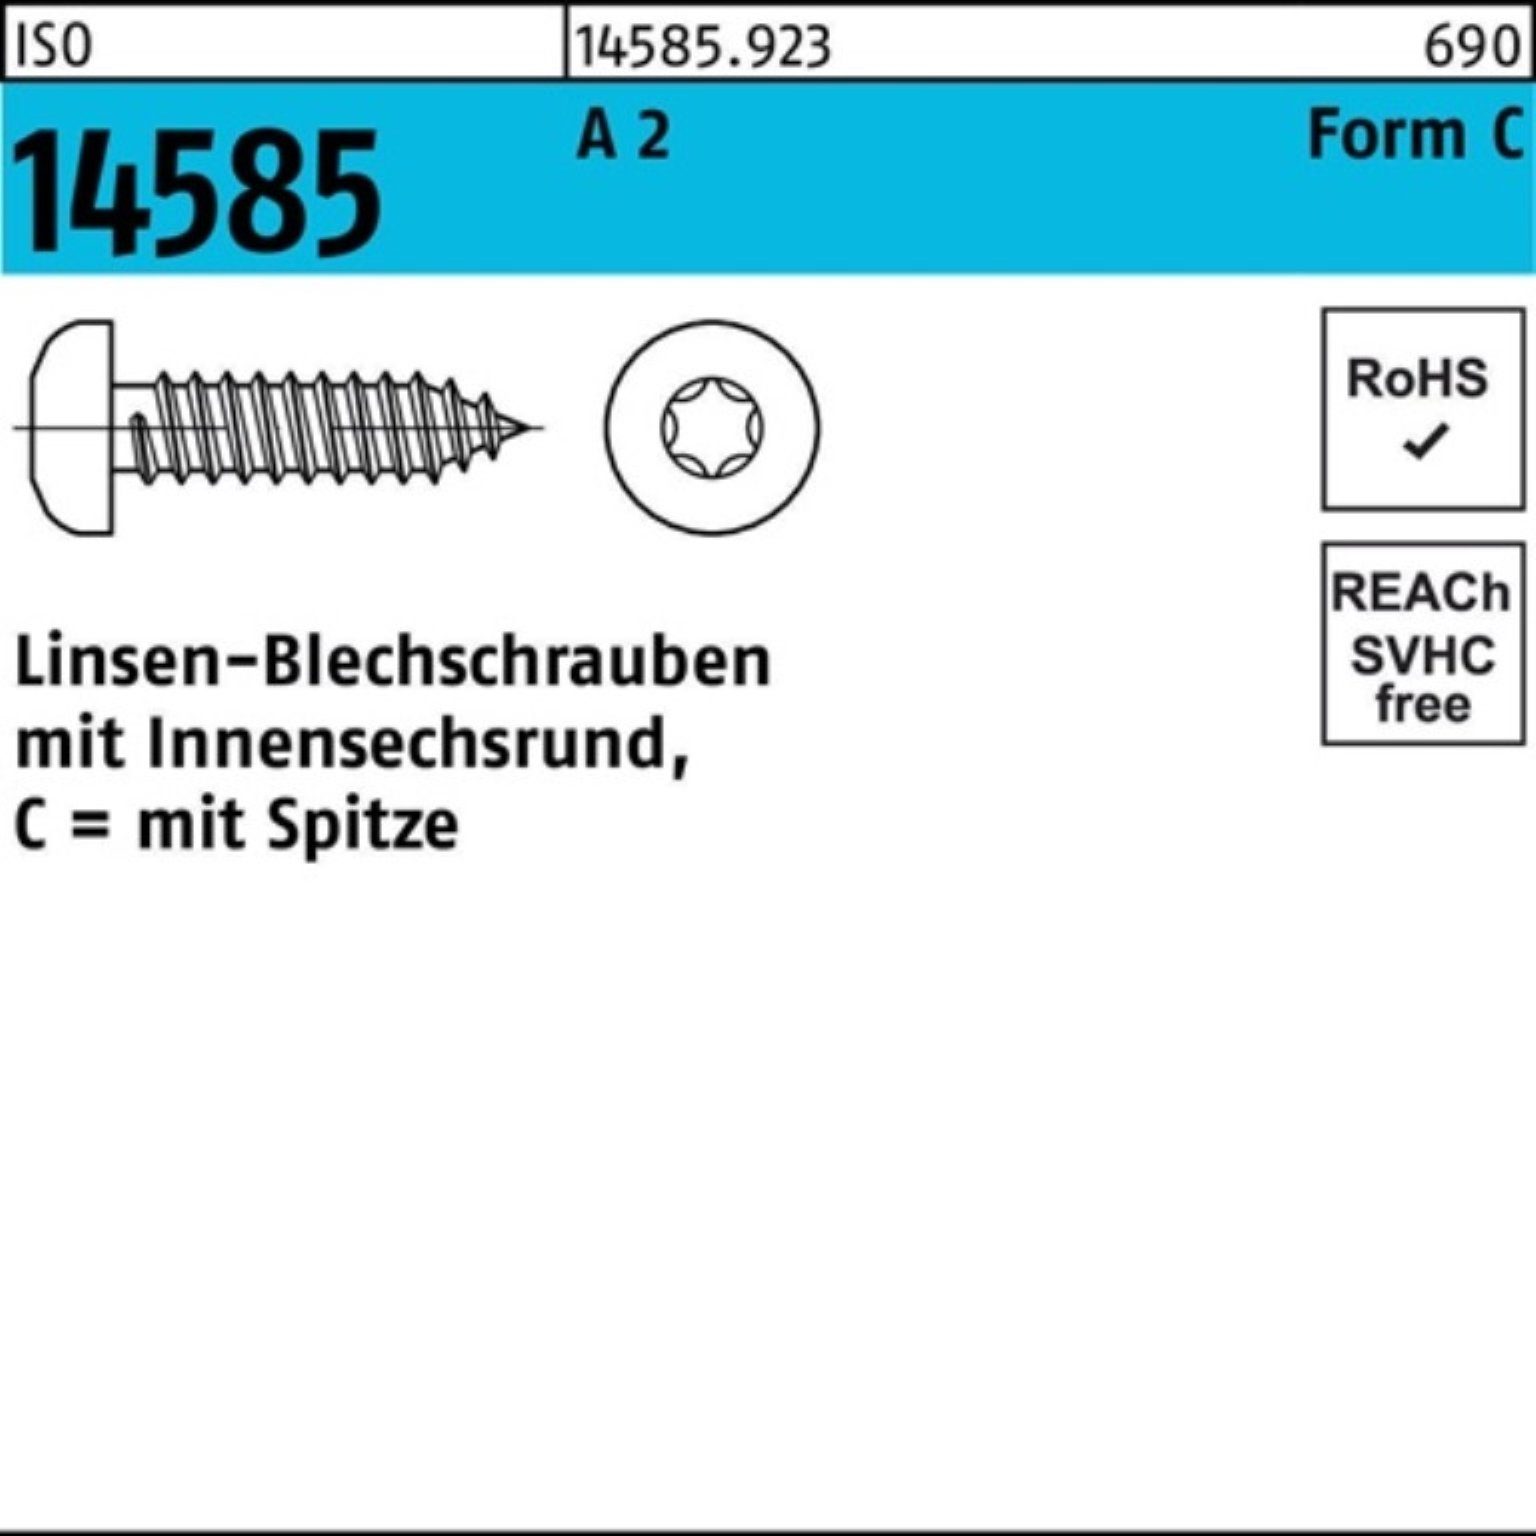 Reyher Blechschraube 1000er Pack ISO -C Linsenblechschraube ISR A 3,9x 14585 16 T15 2 1000